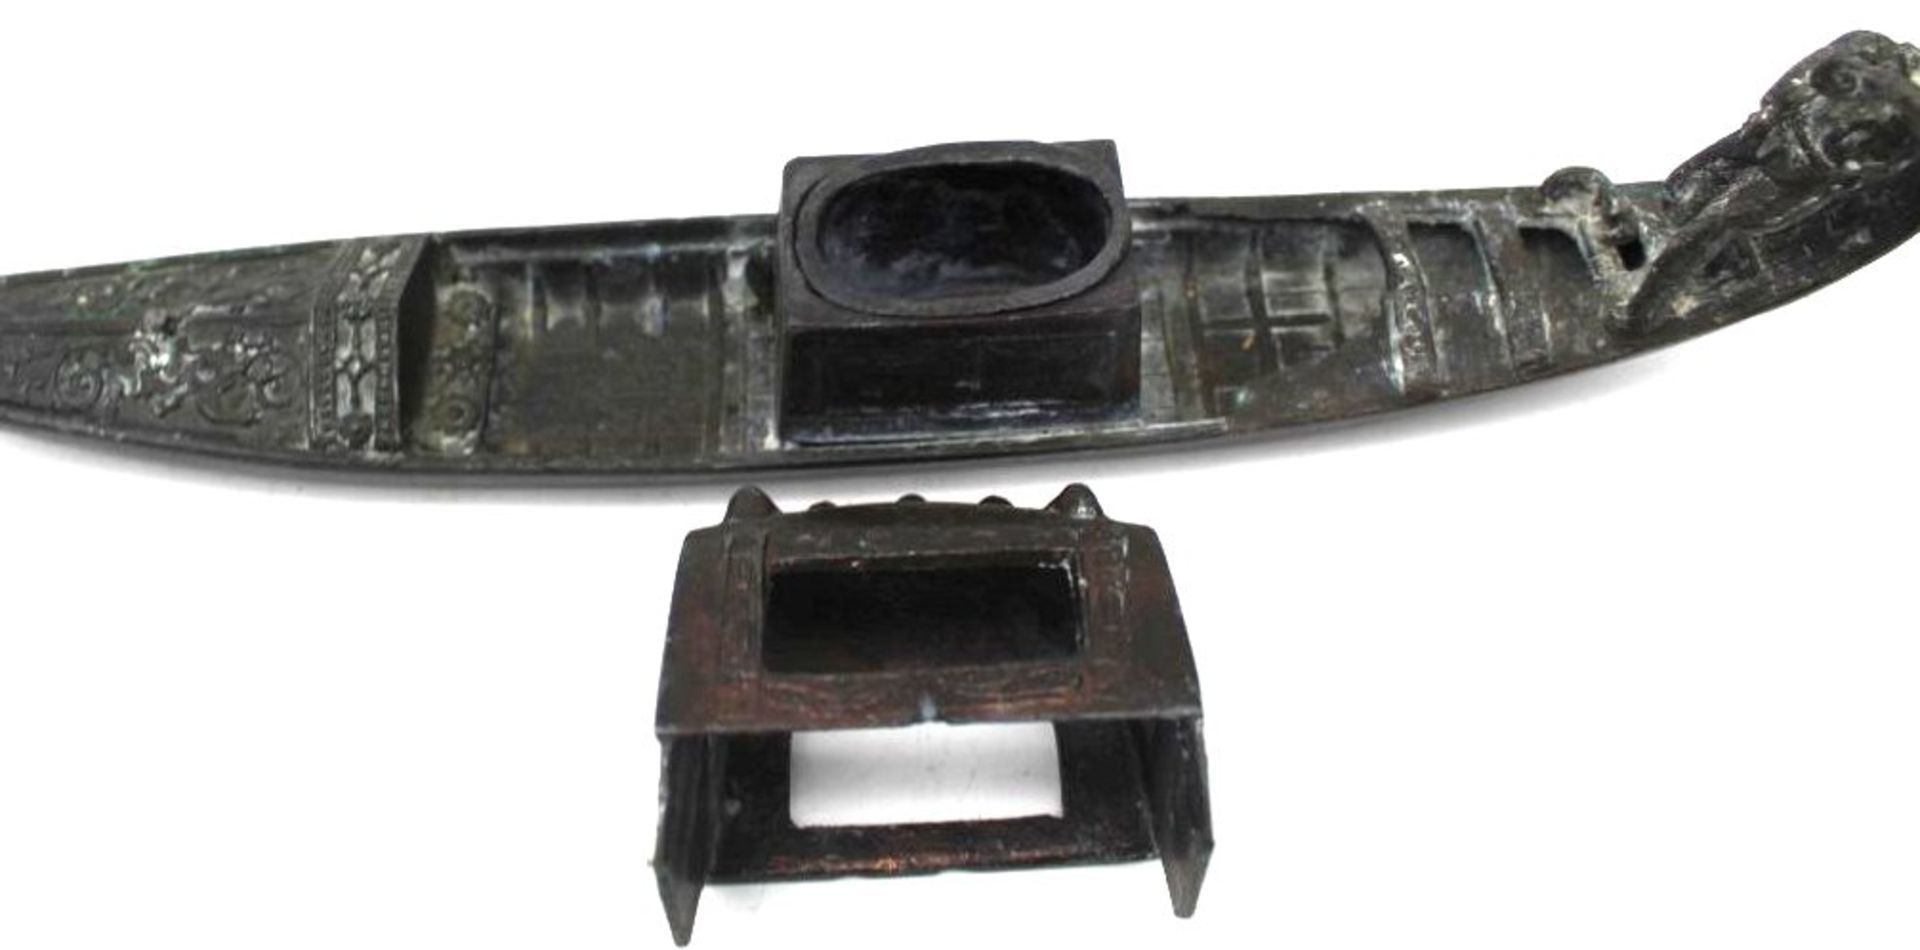 gr. schwere venezianische Gondel aus Metall, bei Gondoliere fehlt das Ruder, Altersspuren, L-30cm, - Image 4 of 5